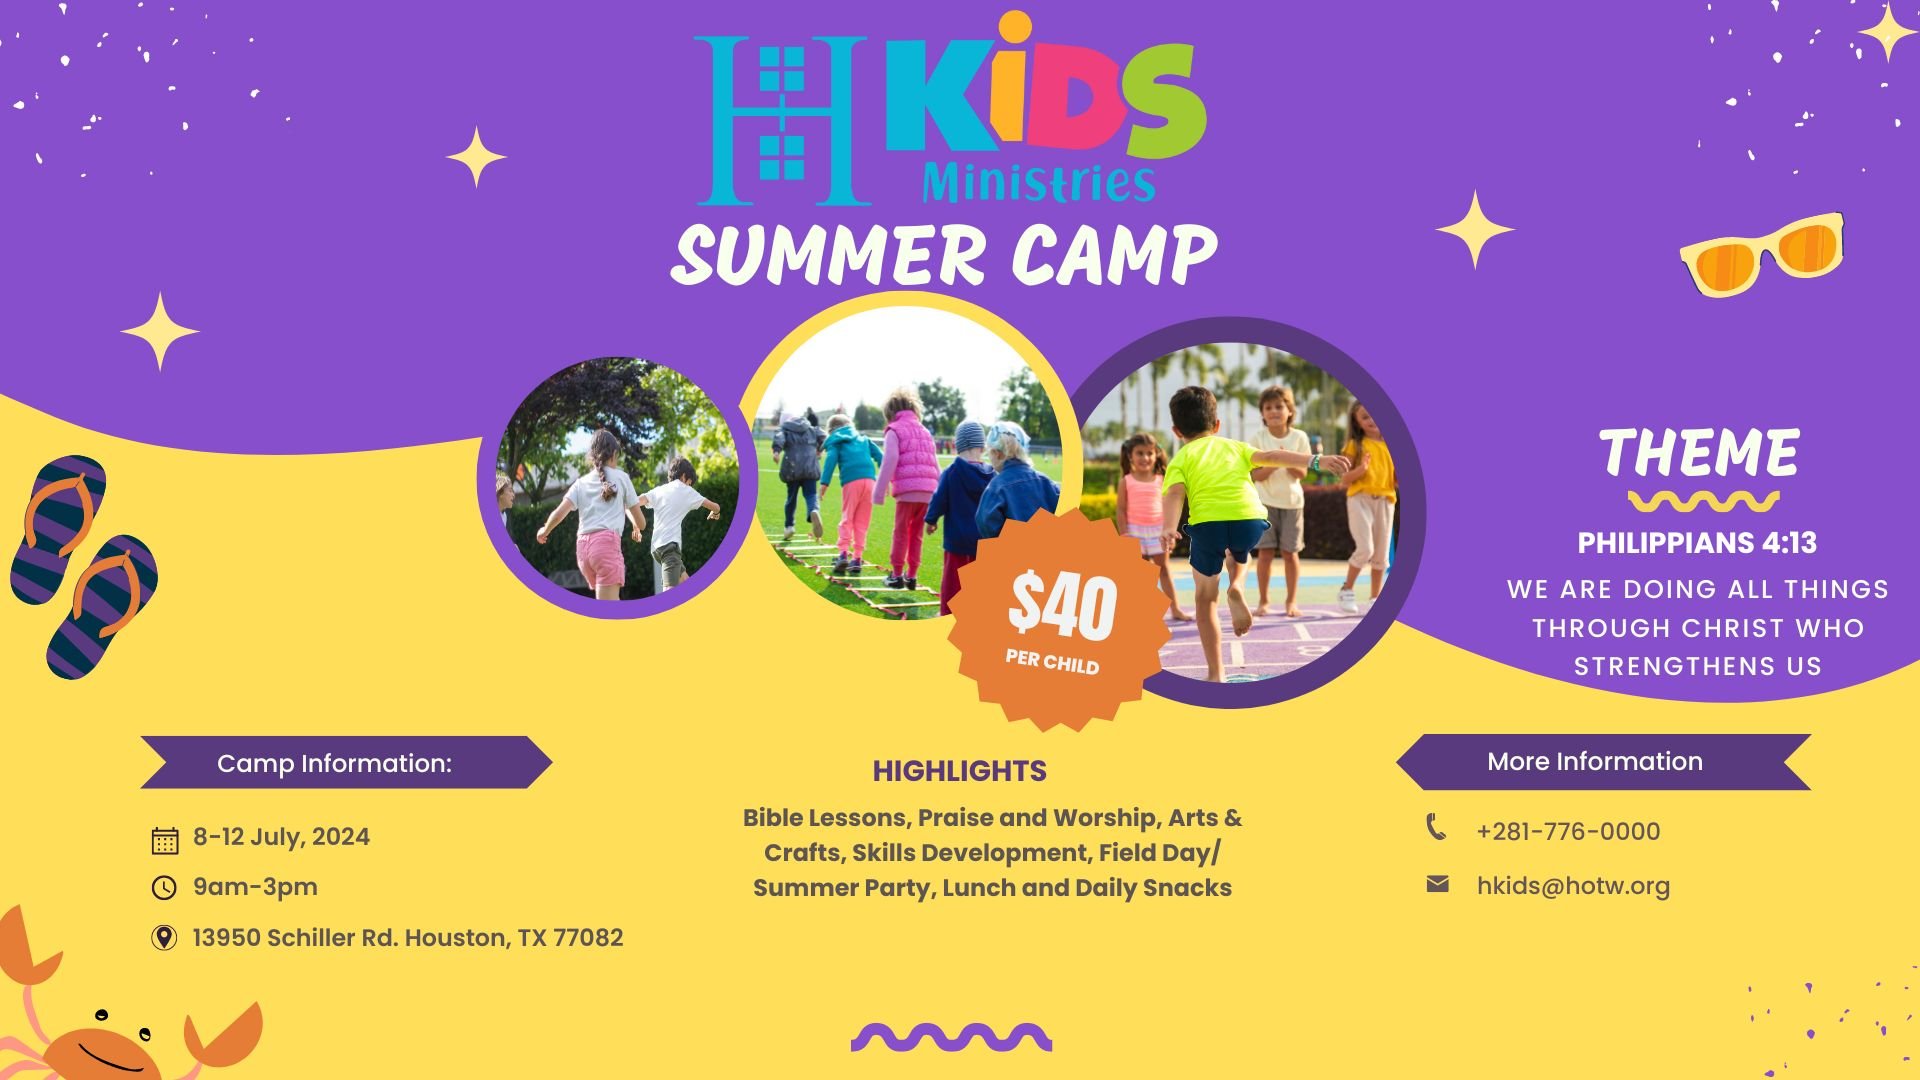 HKids Summer Camp 2024 Flyer.jpg